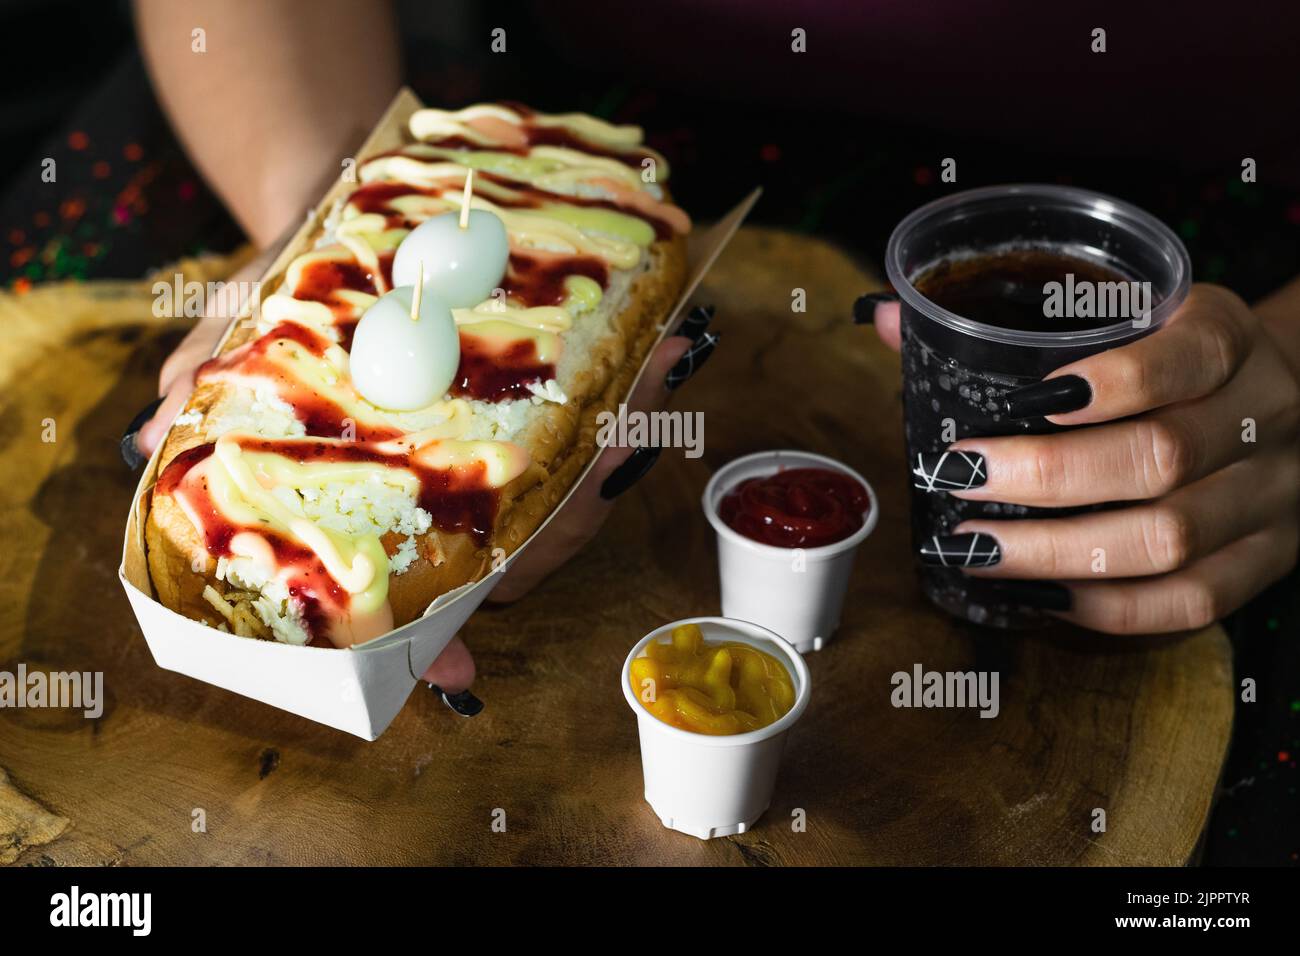 fille tenant dans ses mains un hot dog avec des sauces, du fromage et deux œufs de caille sur le dessus, sombre et fond de bois, à côté de lui il ya deux tasses en plastique w Banque D'Images